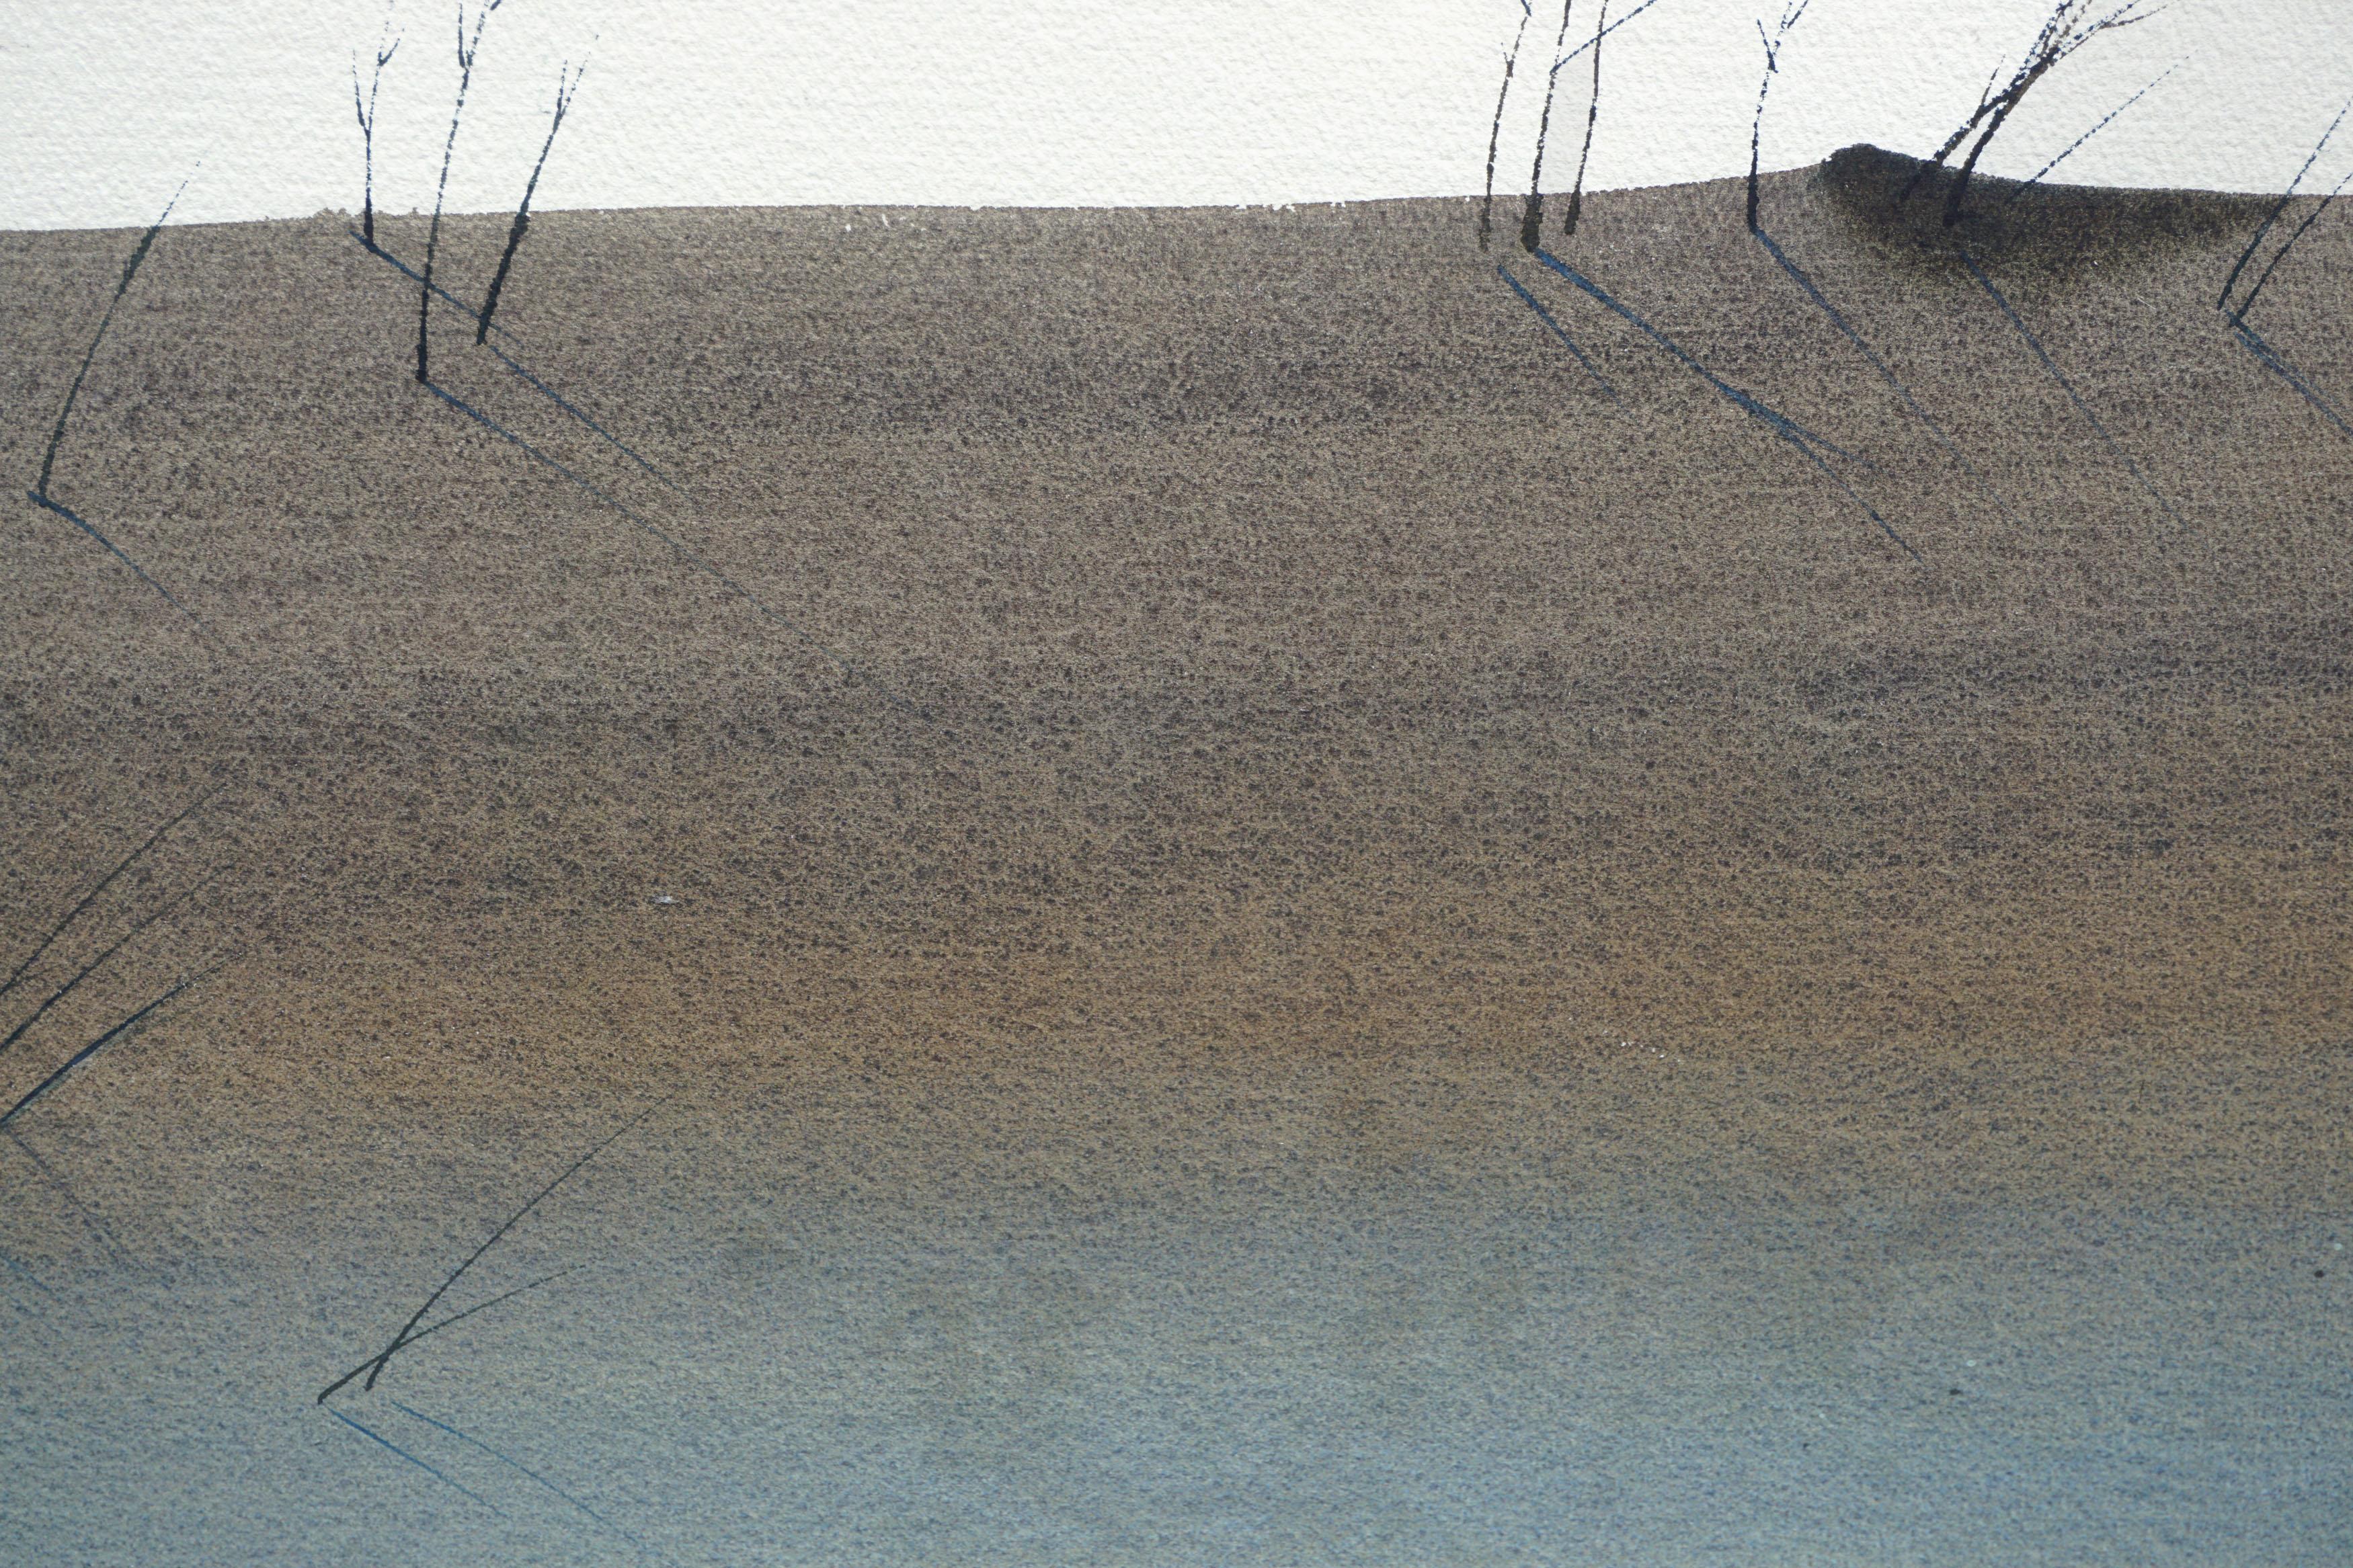 Merveilleuse aquarelle minimaliste d'une dune de sable avec de l'herbe et des oiseaux par Ed Walaitis (américain, 1914-2005), 1978. Signé et daté en bas à gauche. État : excellent. Présenté dans un cadre en bois clair avec plexiglas. Taille de